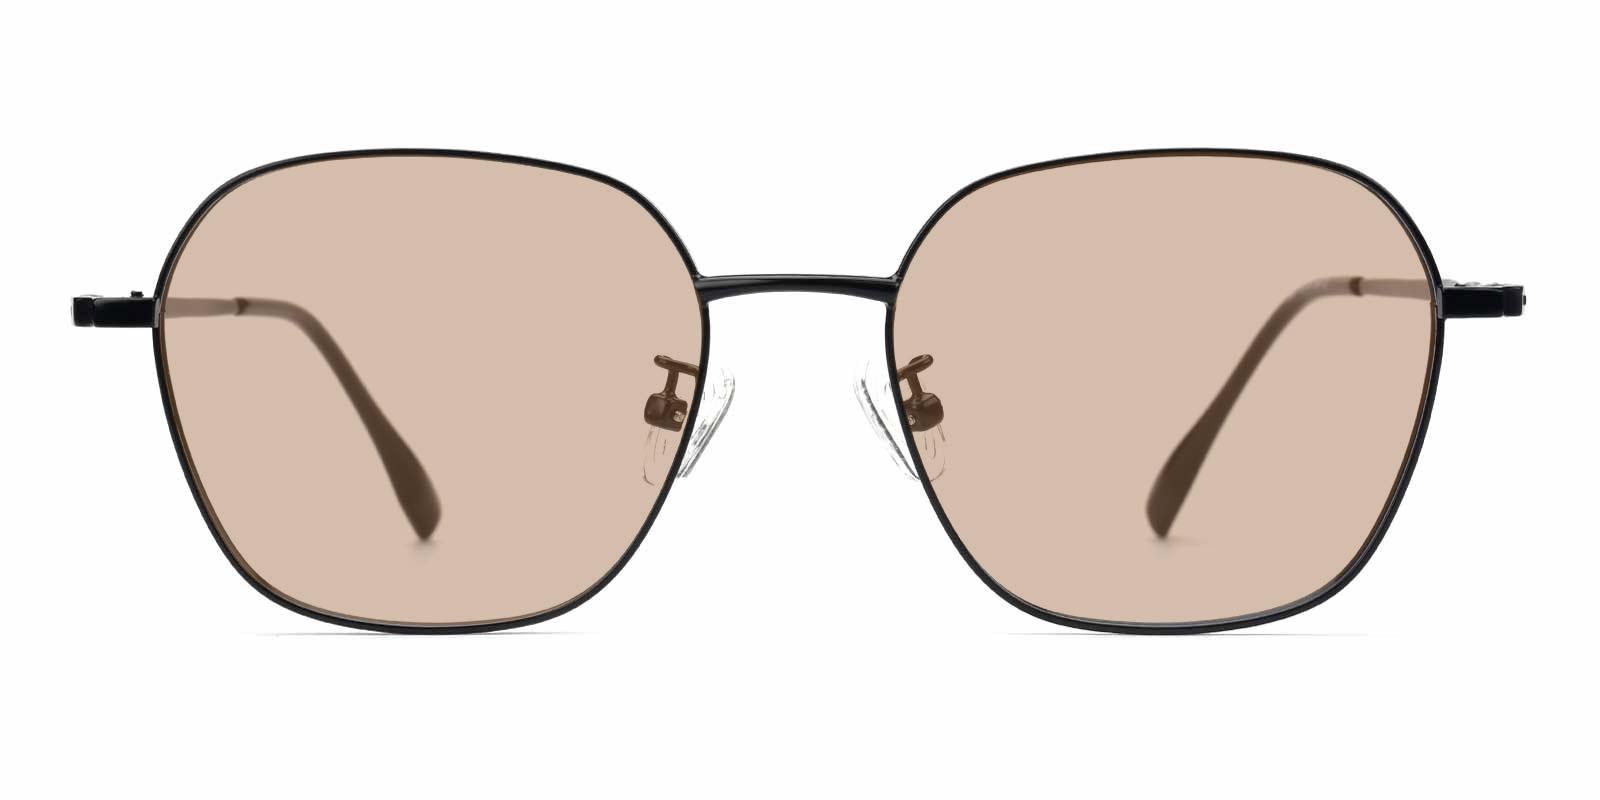 Aidan-Black-Square-Metal-Sunglasses-detail